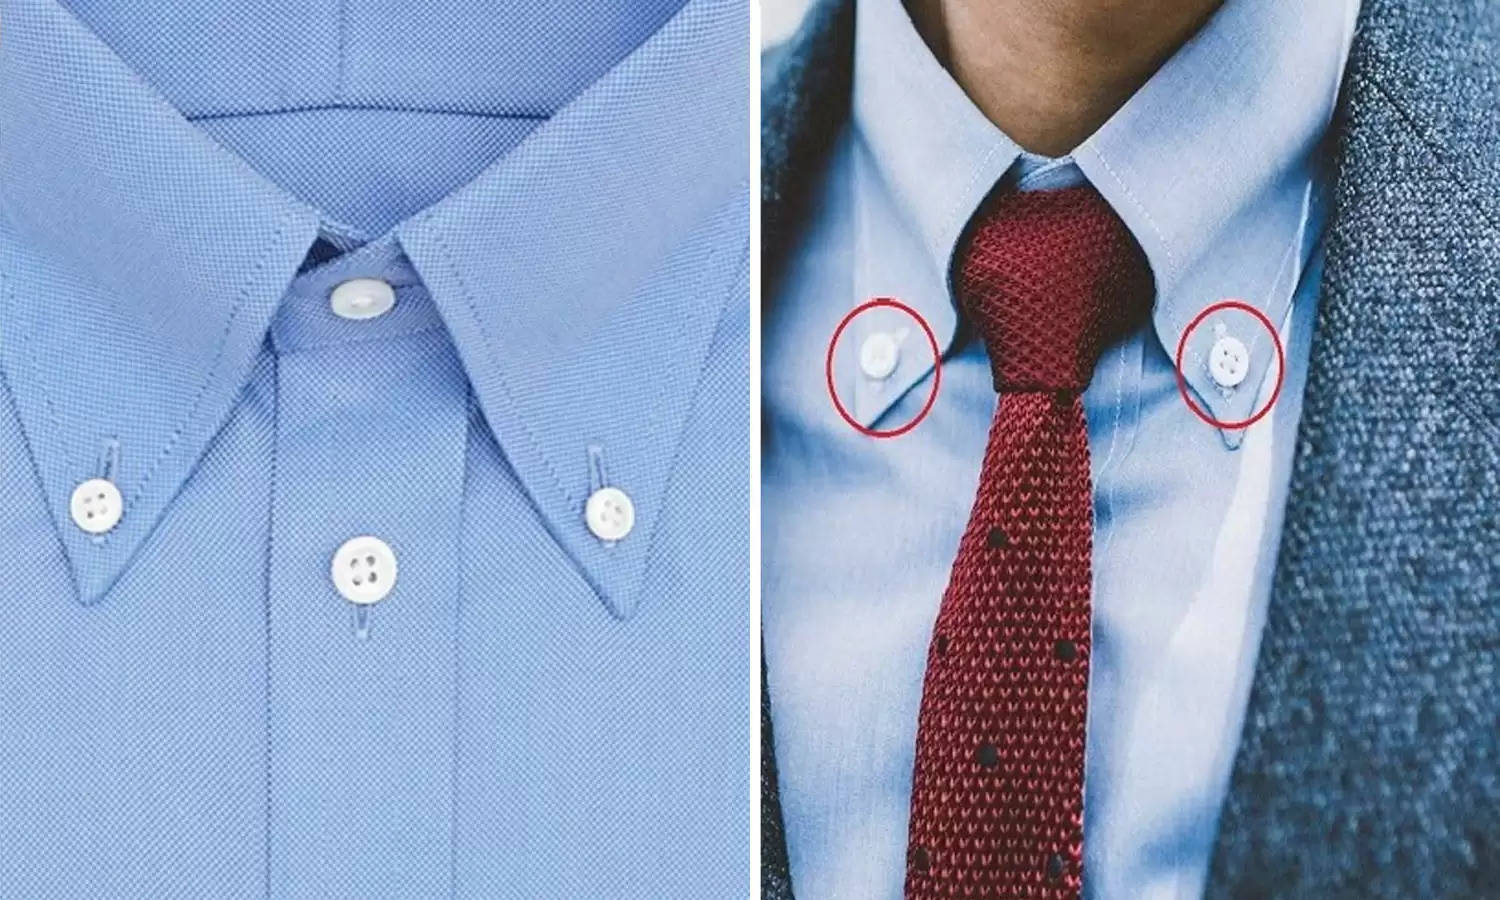 शर्ट के कॉलर पर दो छोटे बटन लगे होने का ये है कारण, क्या आपको पता है